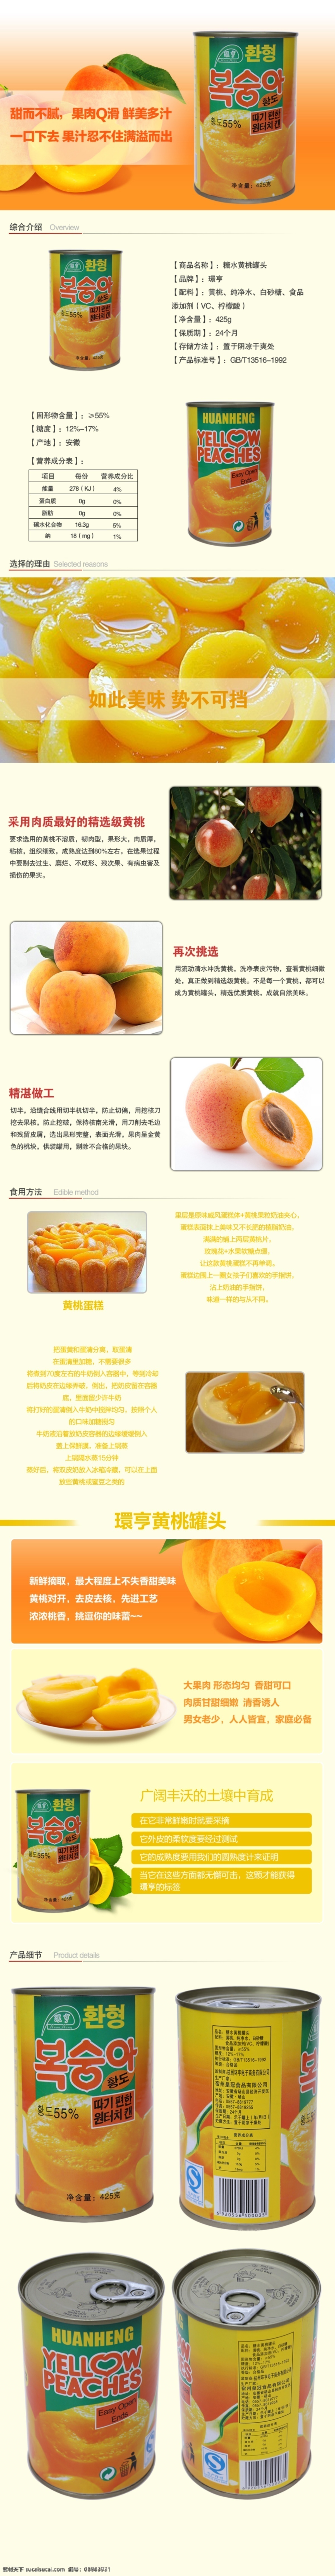 黄桃 罐头 详情 页面 黄桃罐头 描述 促销 新鲜 美味 白色